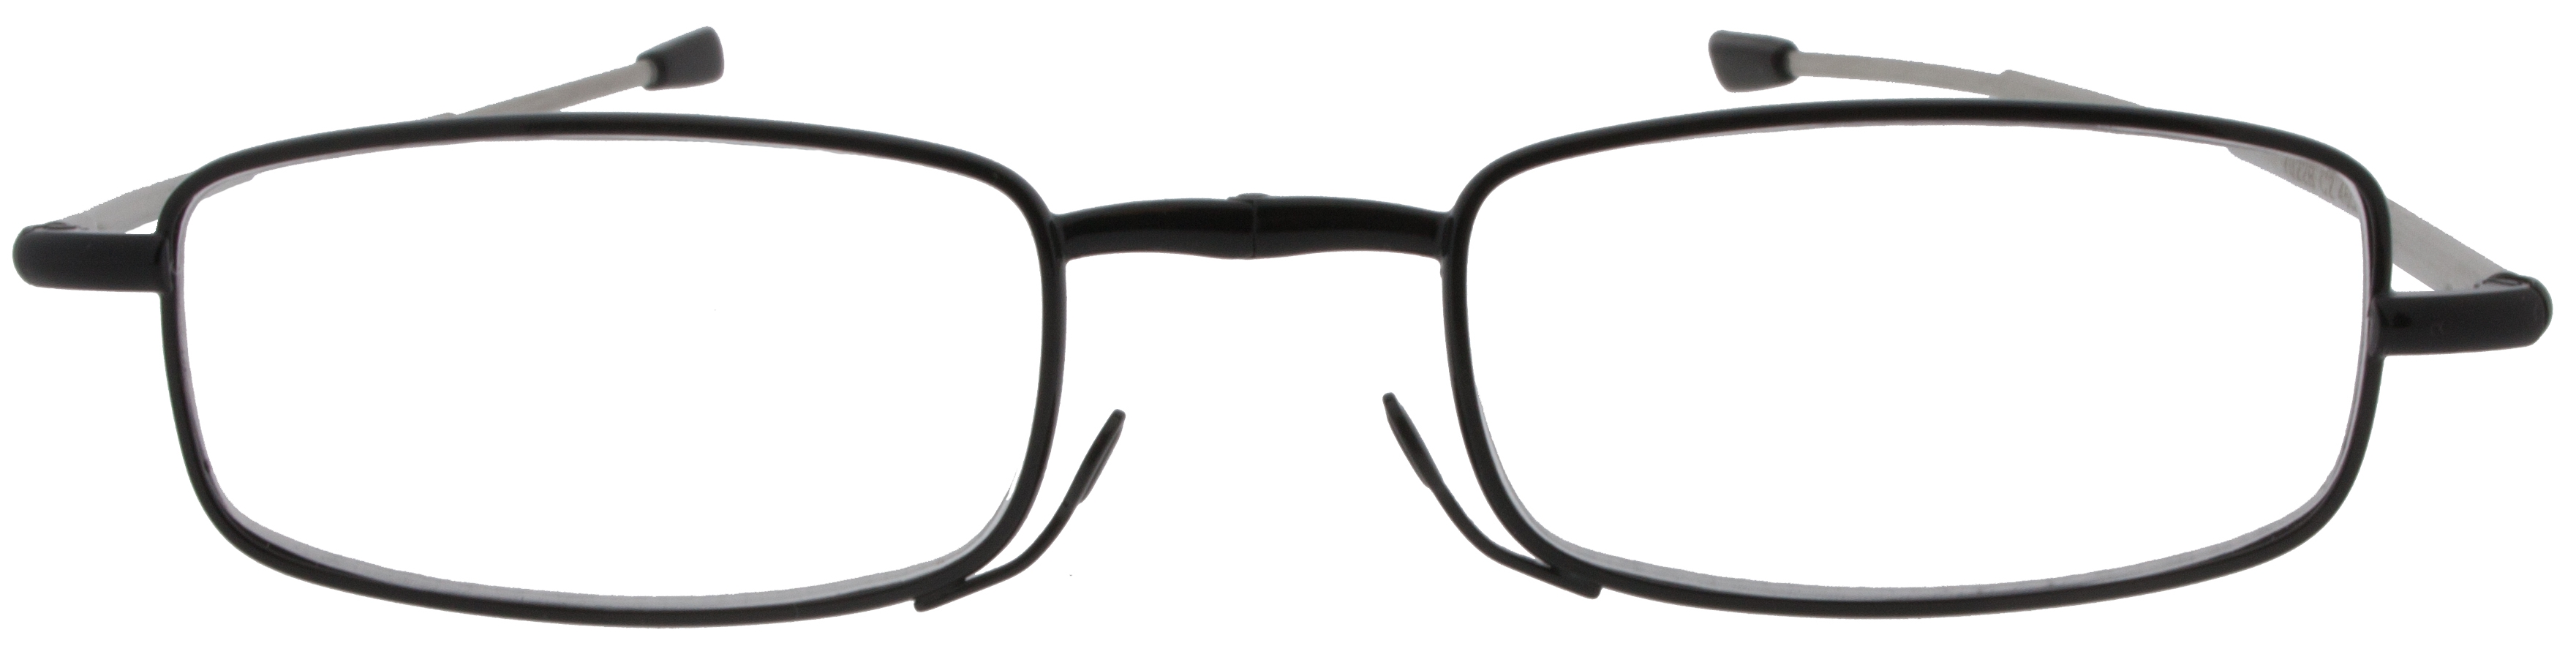 occhiale pieghevole nero 356